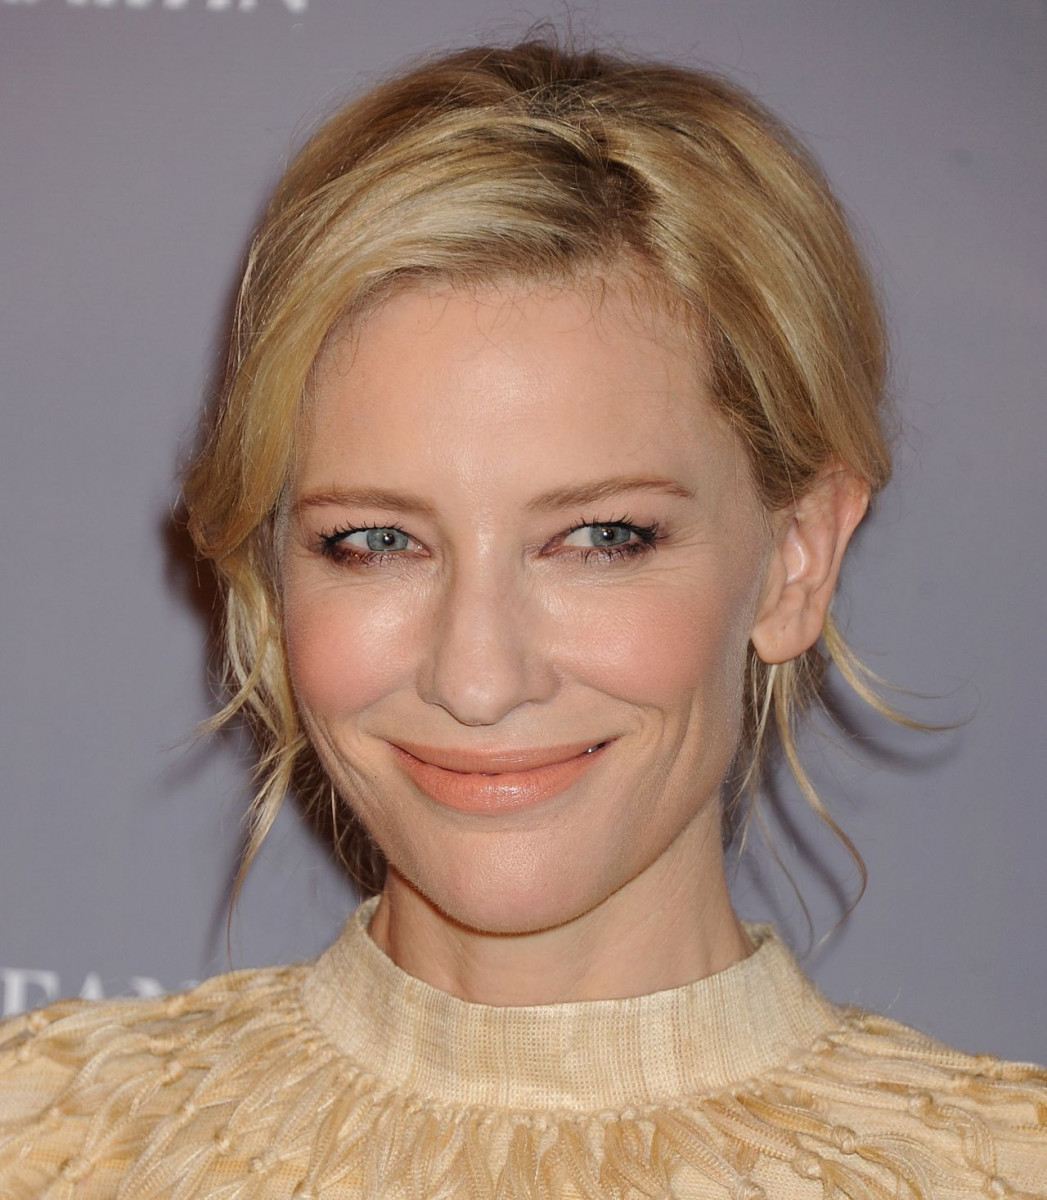 Cate Blanchett photo 1097 of 1990 pics, wallpaper - photo #676211 ...